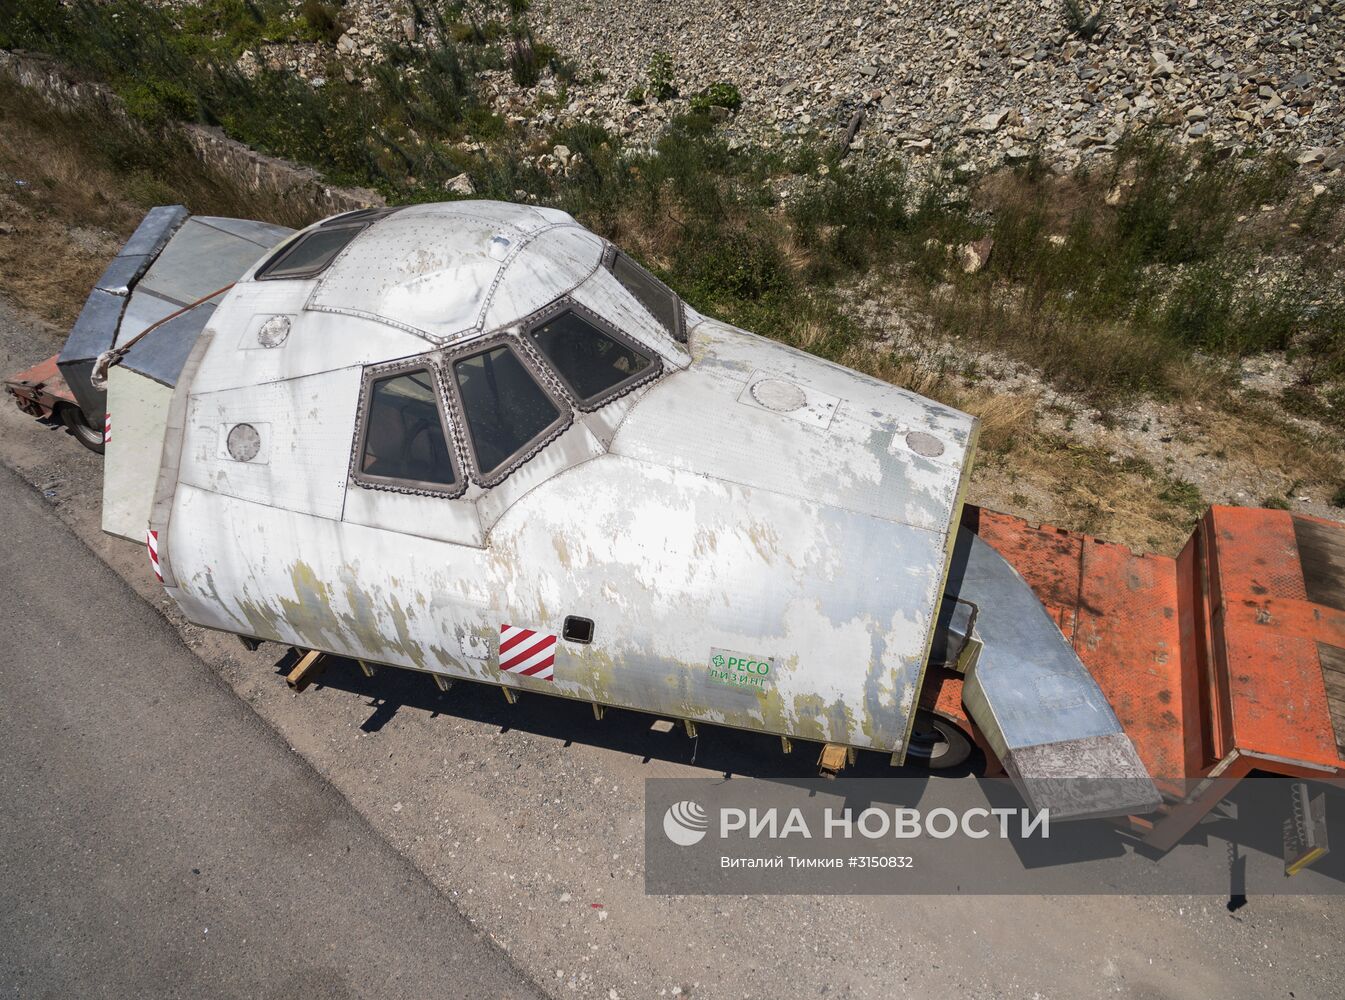 Макет космического корабля "Буран" прибыл в Краснодарский край